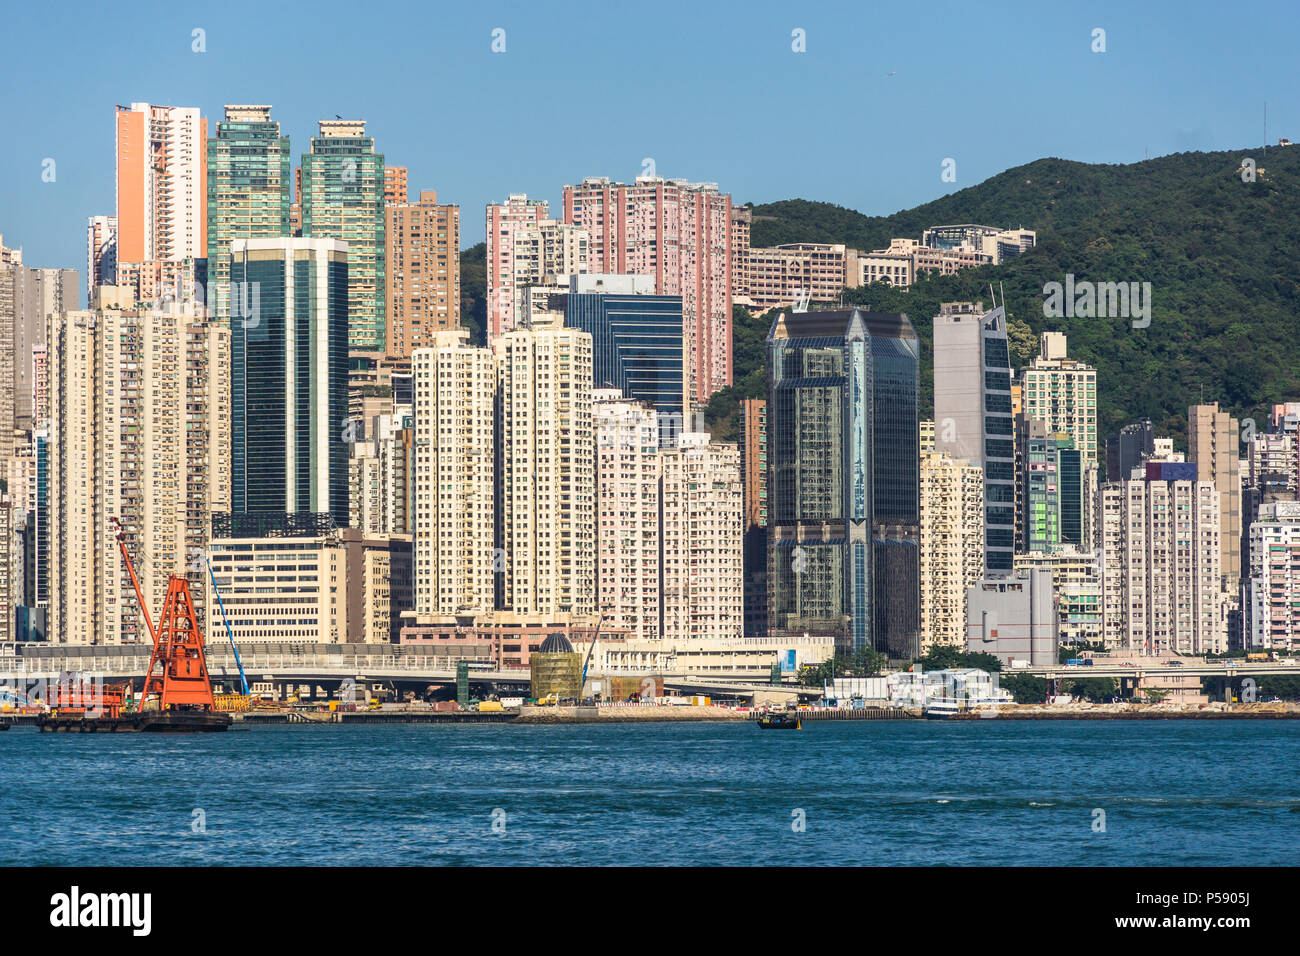 Le North Point très denses très résidentiel avec de nombreux grands tours de l'île de Hong Kong par le port Victoria de Hong Kong, Chine Banque D'Images